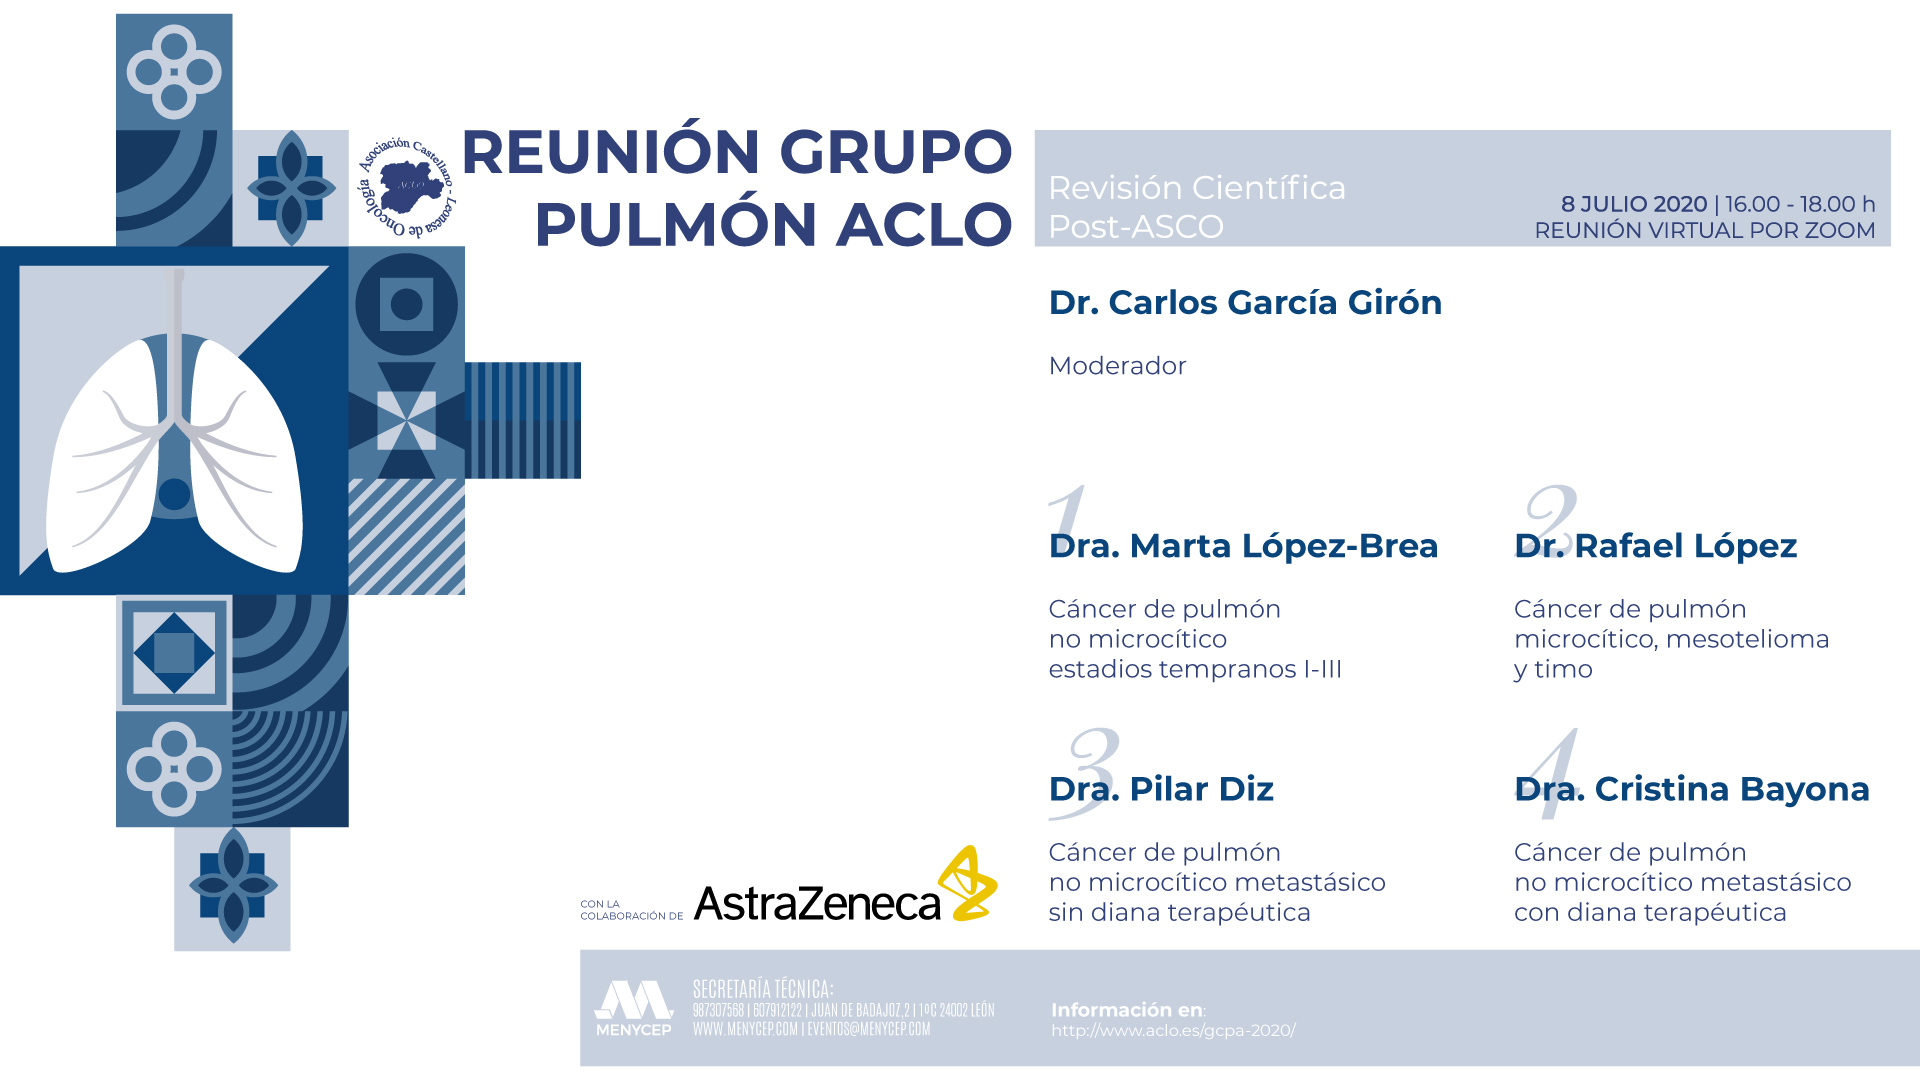 Reunión Grupo Pulmón ACLO | Revisión Científica Post-ASCO